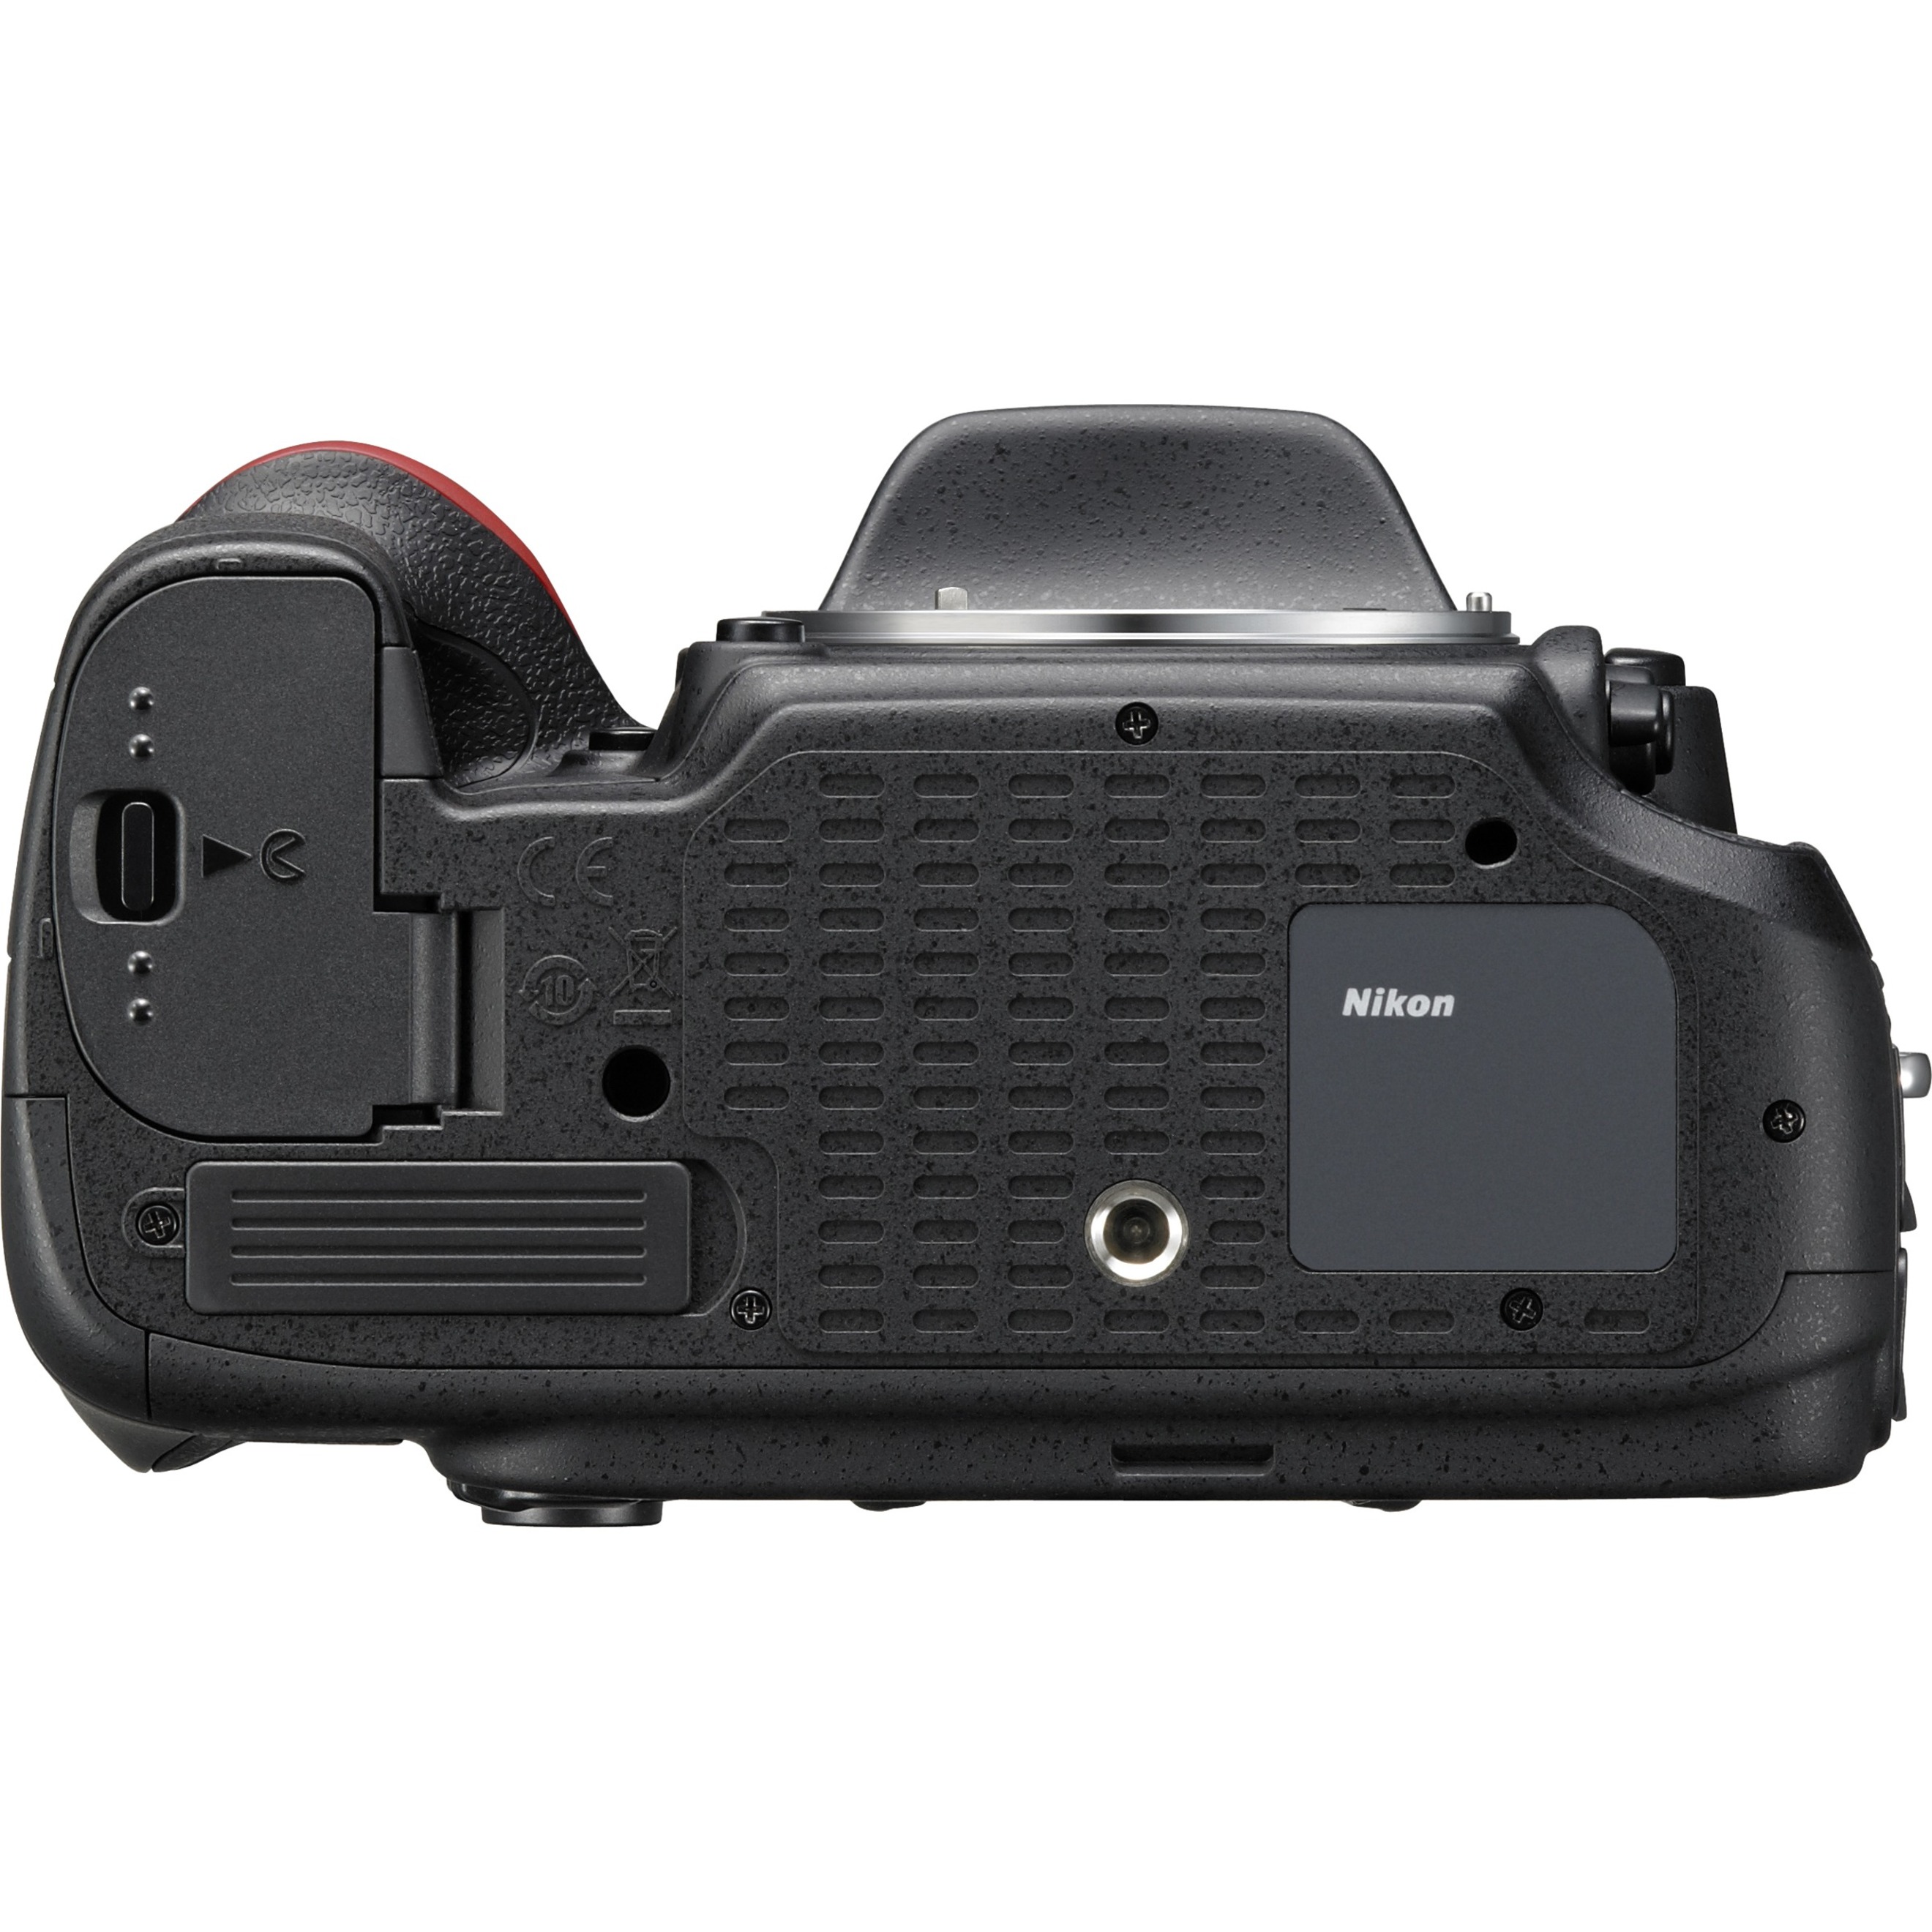 Nikon D610 24.3 Megapixel Digital SLR Camera Body Only - image 2 of 4